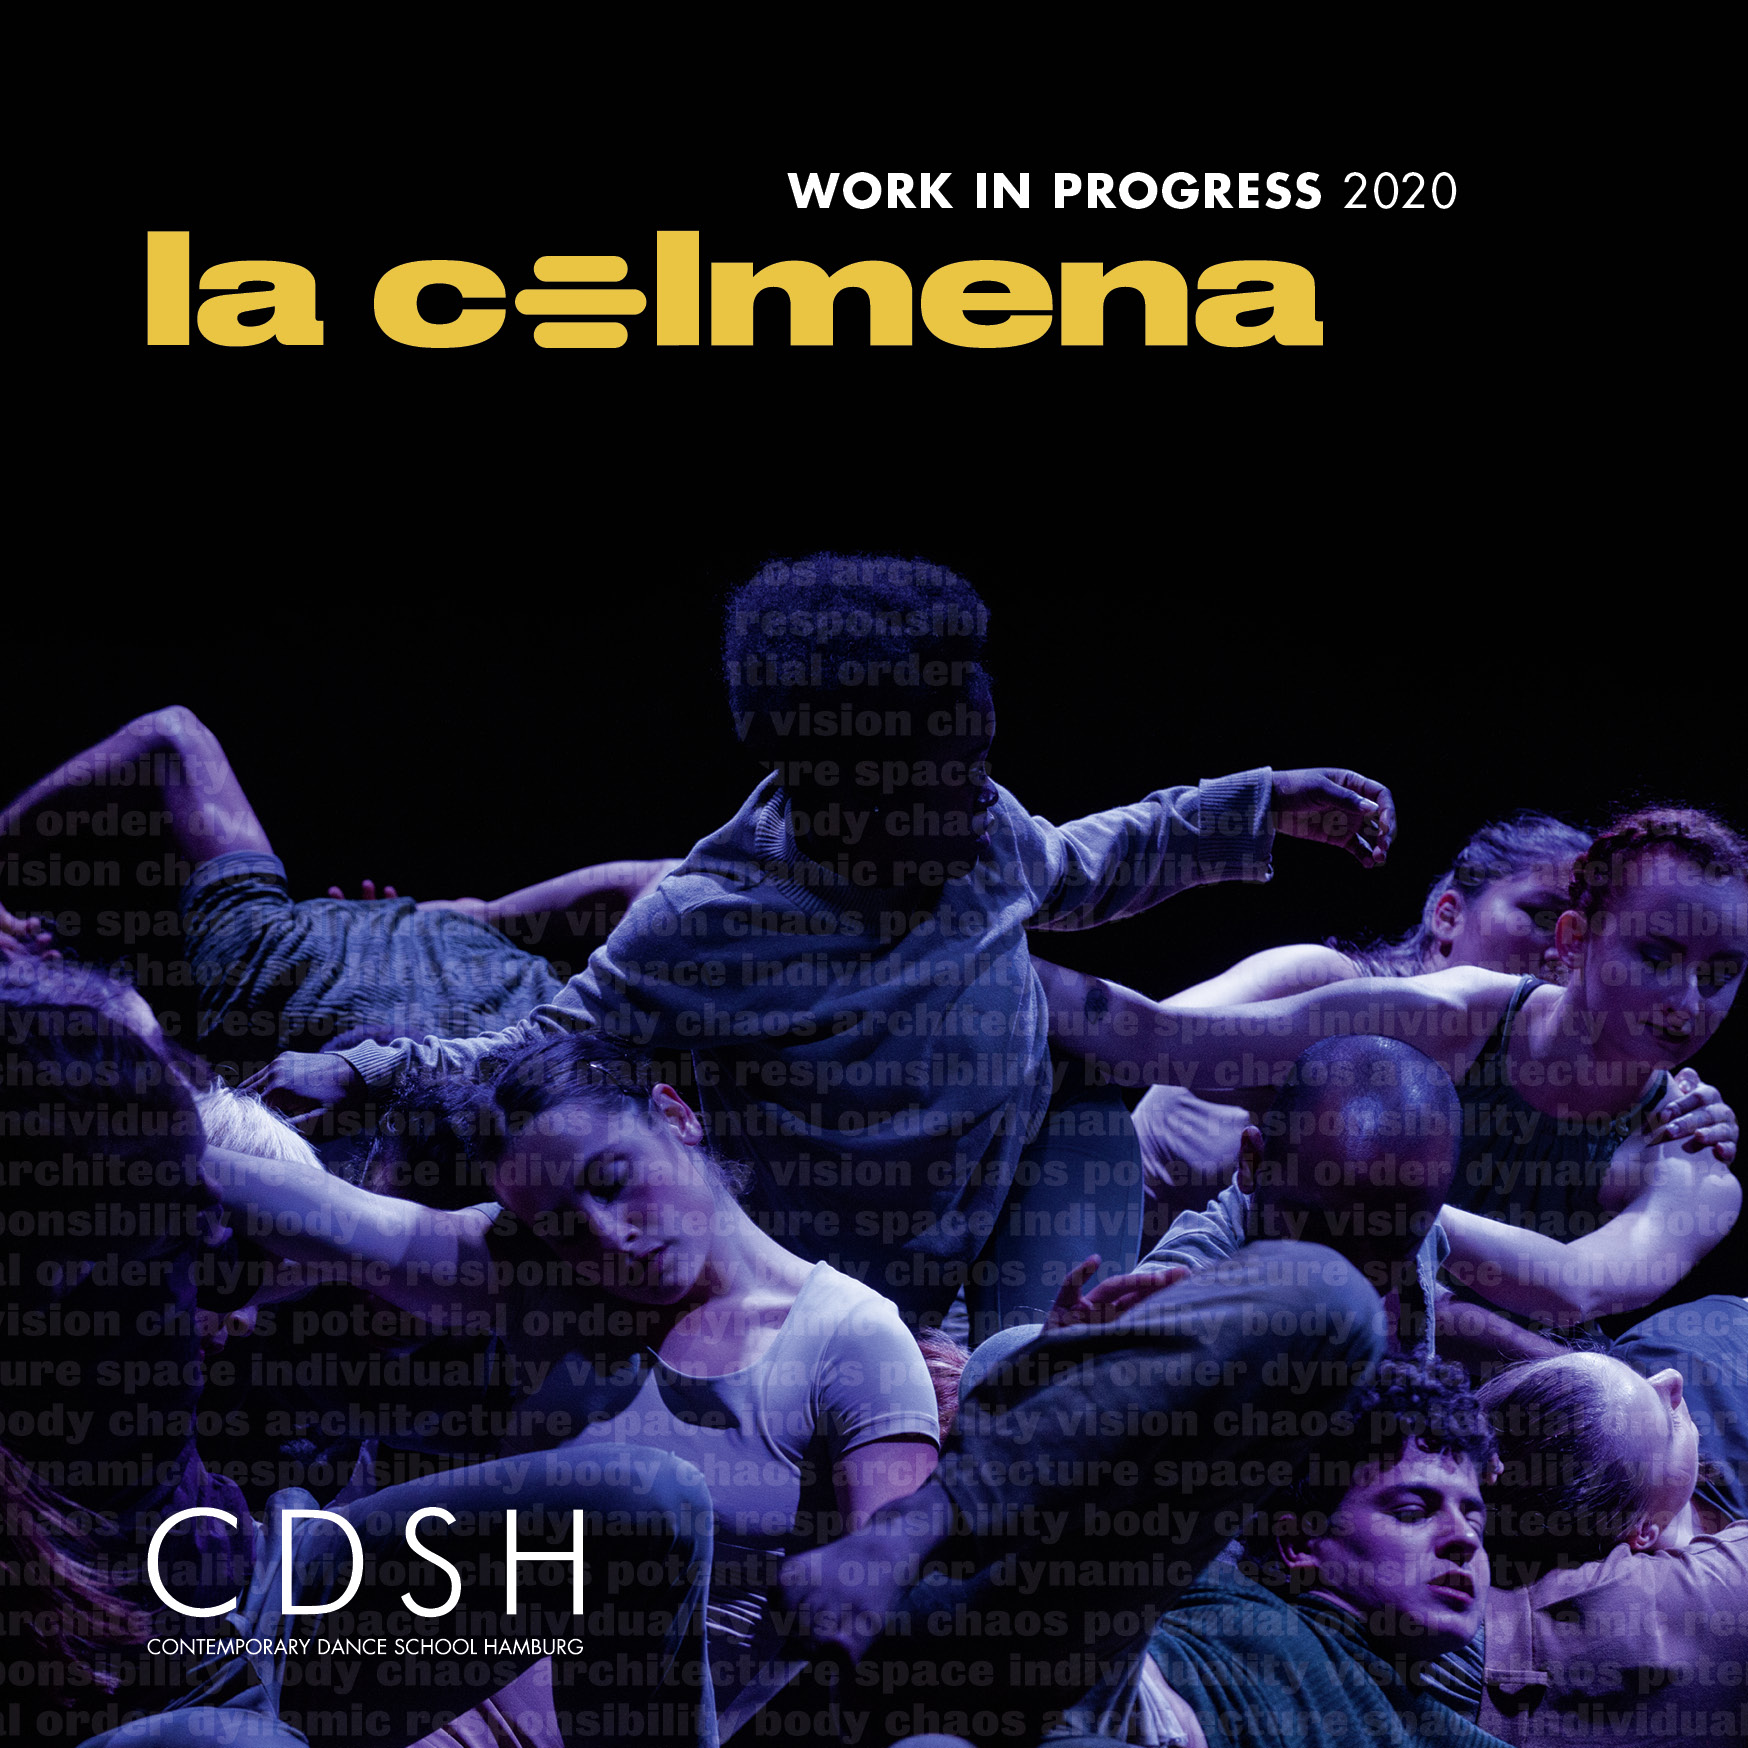 2020 Las Colmenas